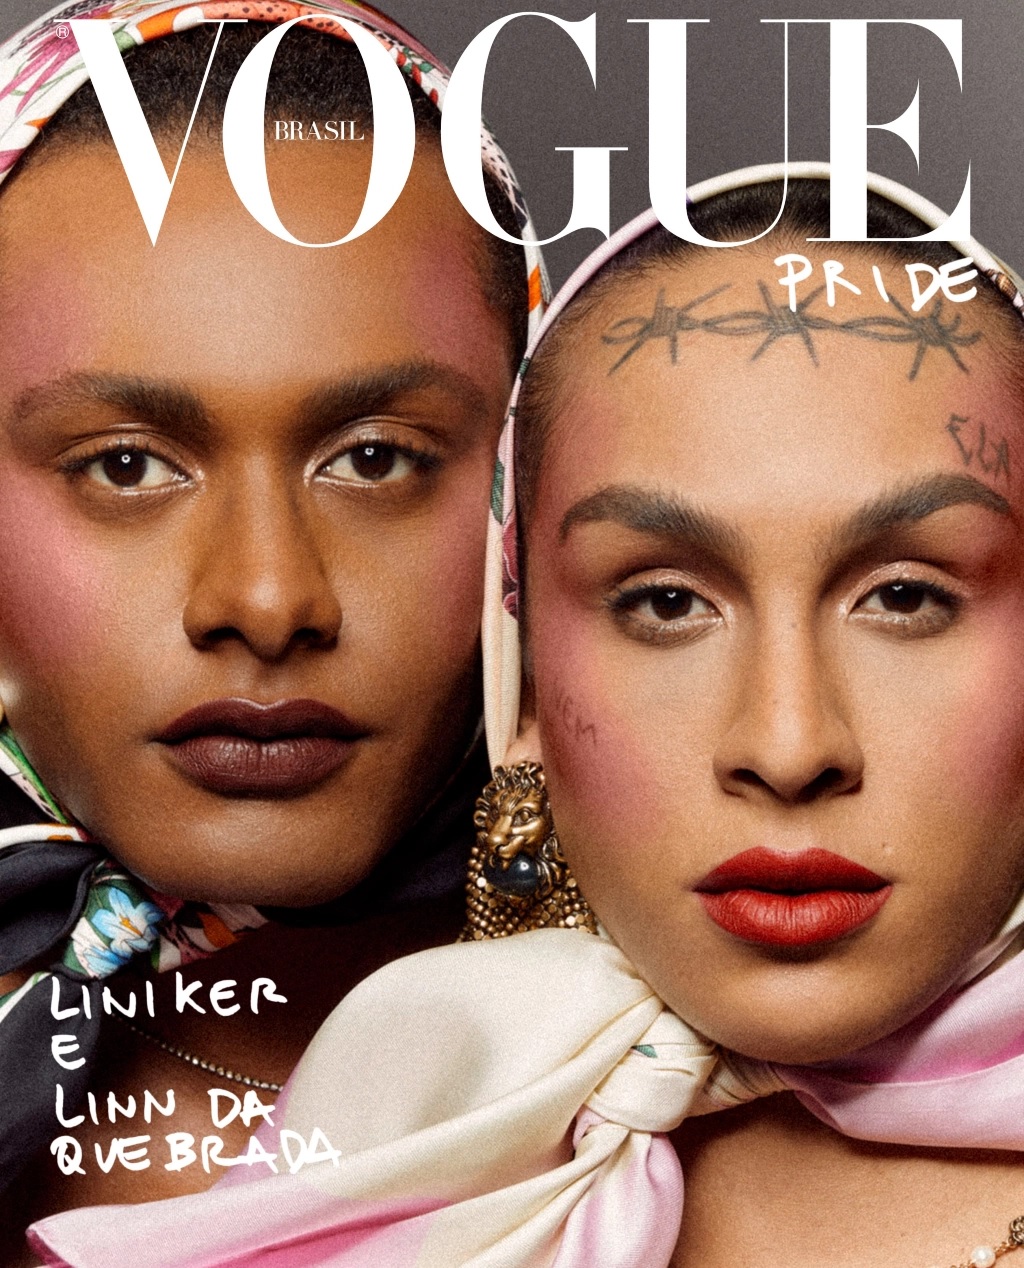 Cantoras Liniker e Linn da Quebrada são capa da Vogue; veja fotos